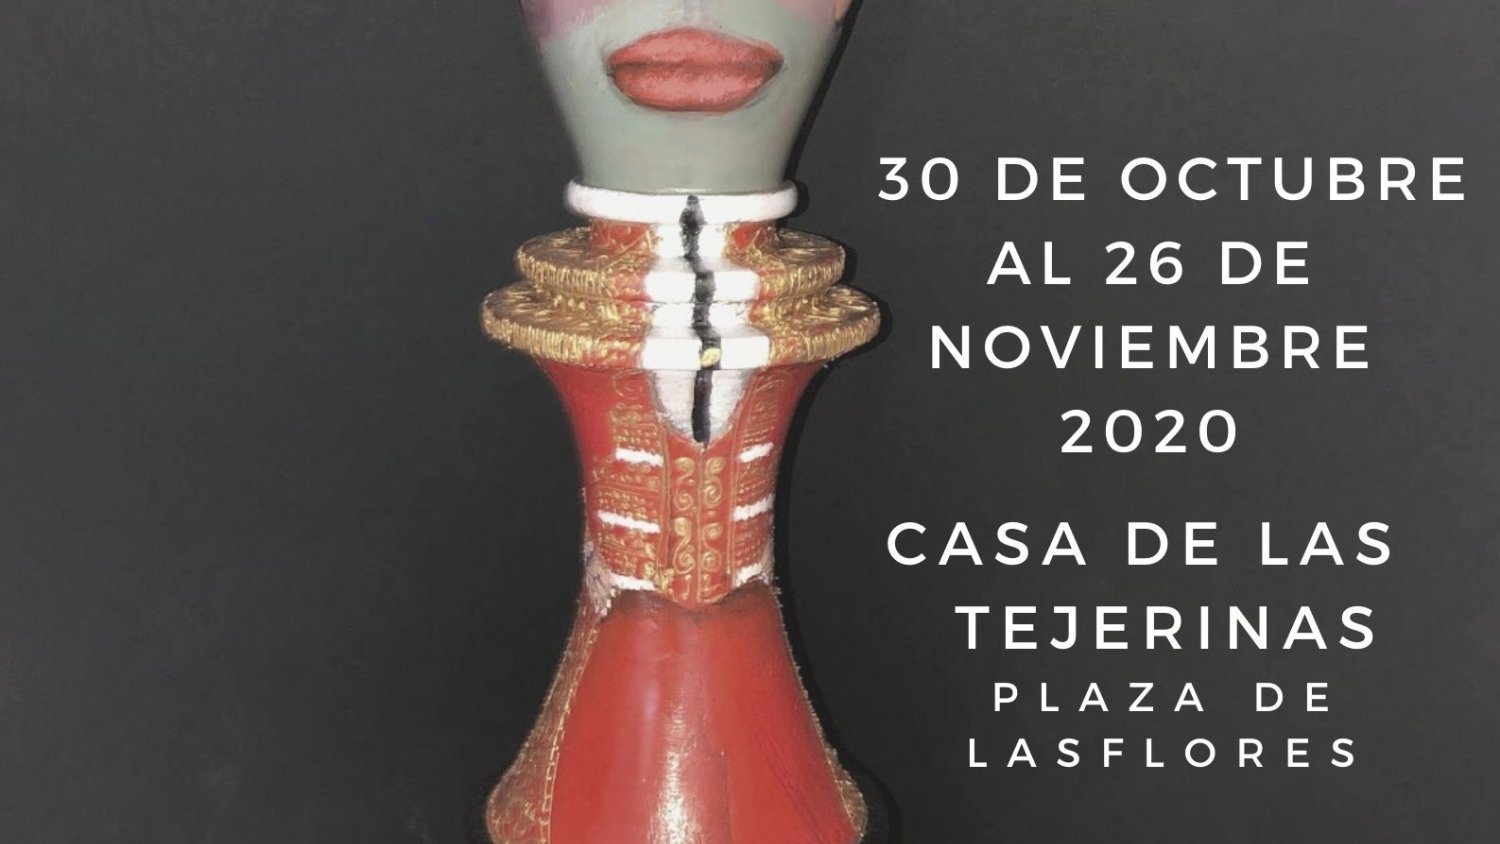 La Casa de Las Tejerinas de Estepona acoge la exposición ‘Proyecto Cobachotix’ Ajedrez